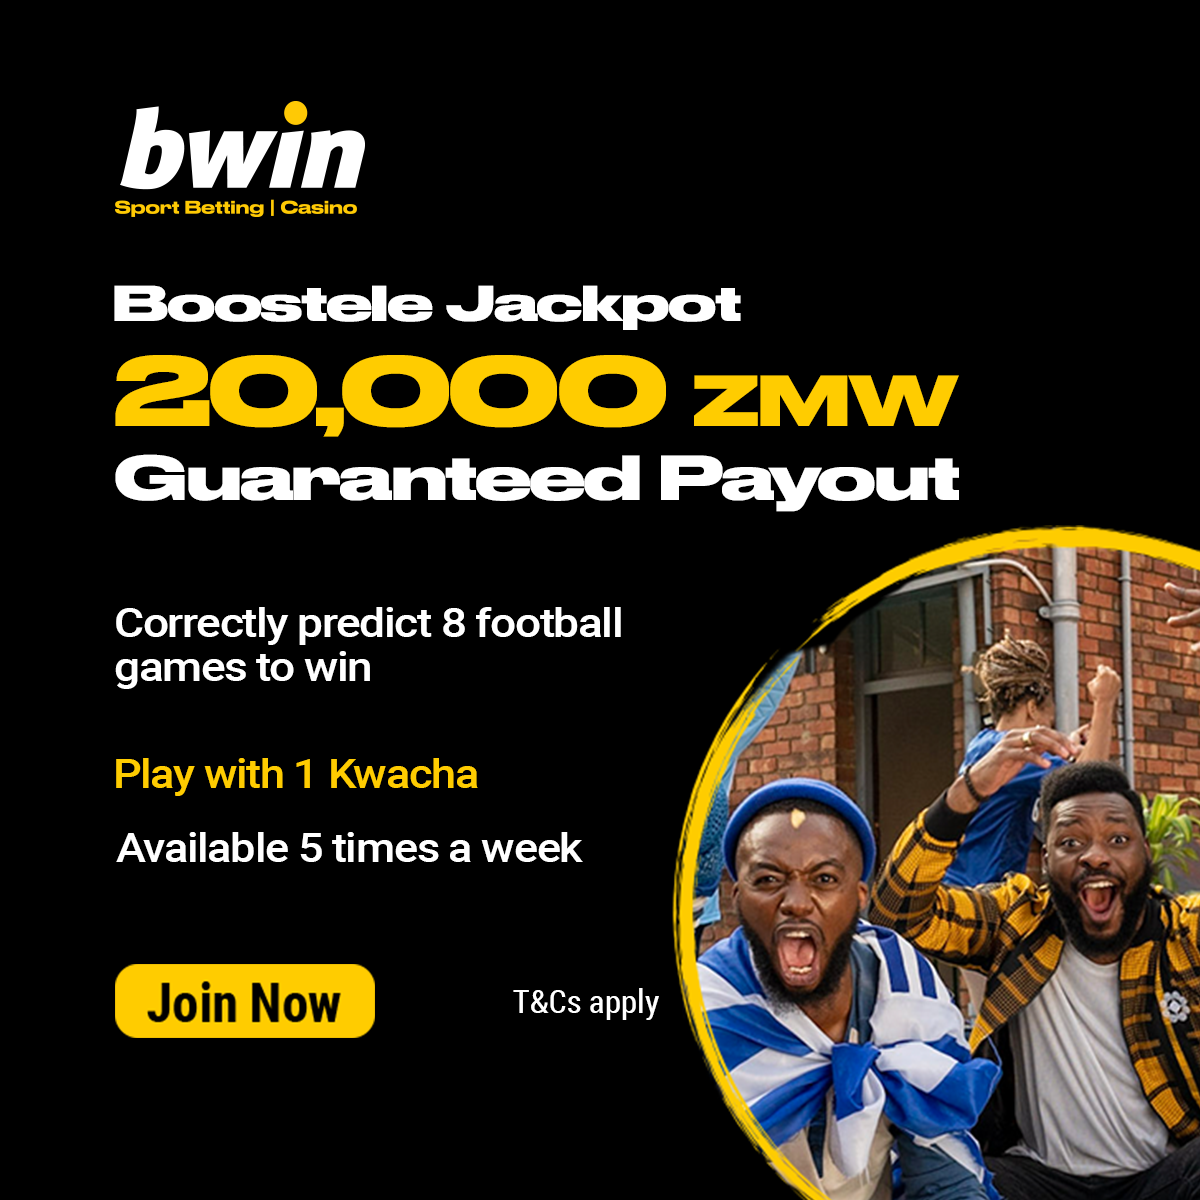 boostele-jackpot bwin zambia bonus